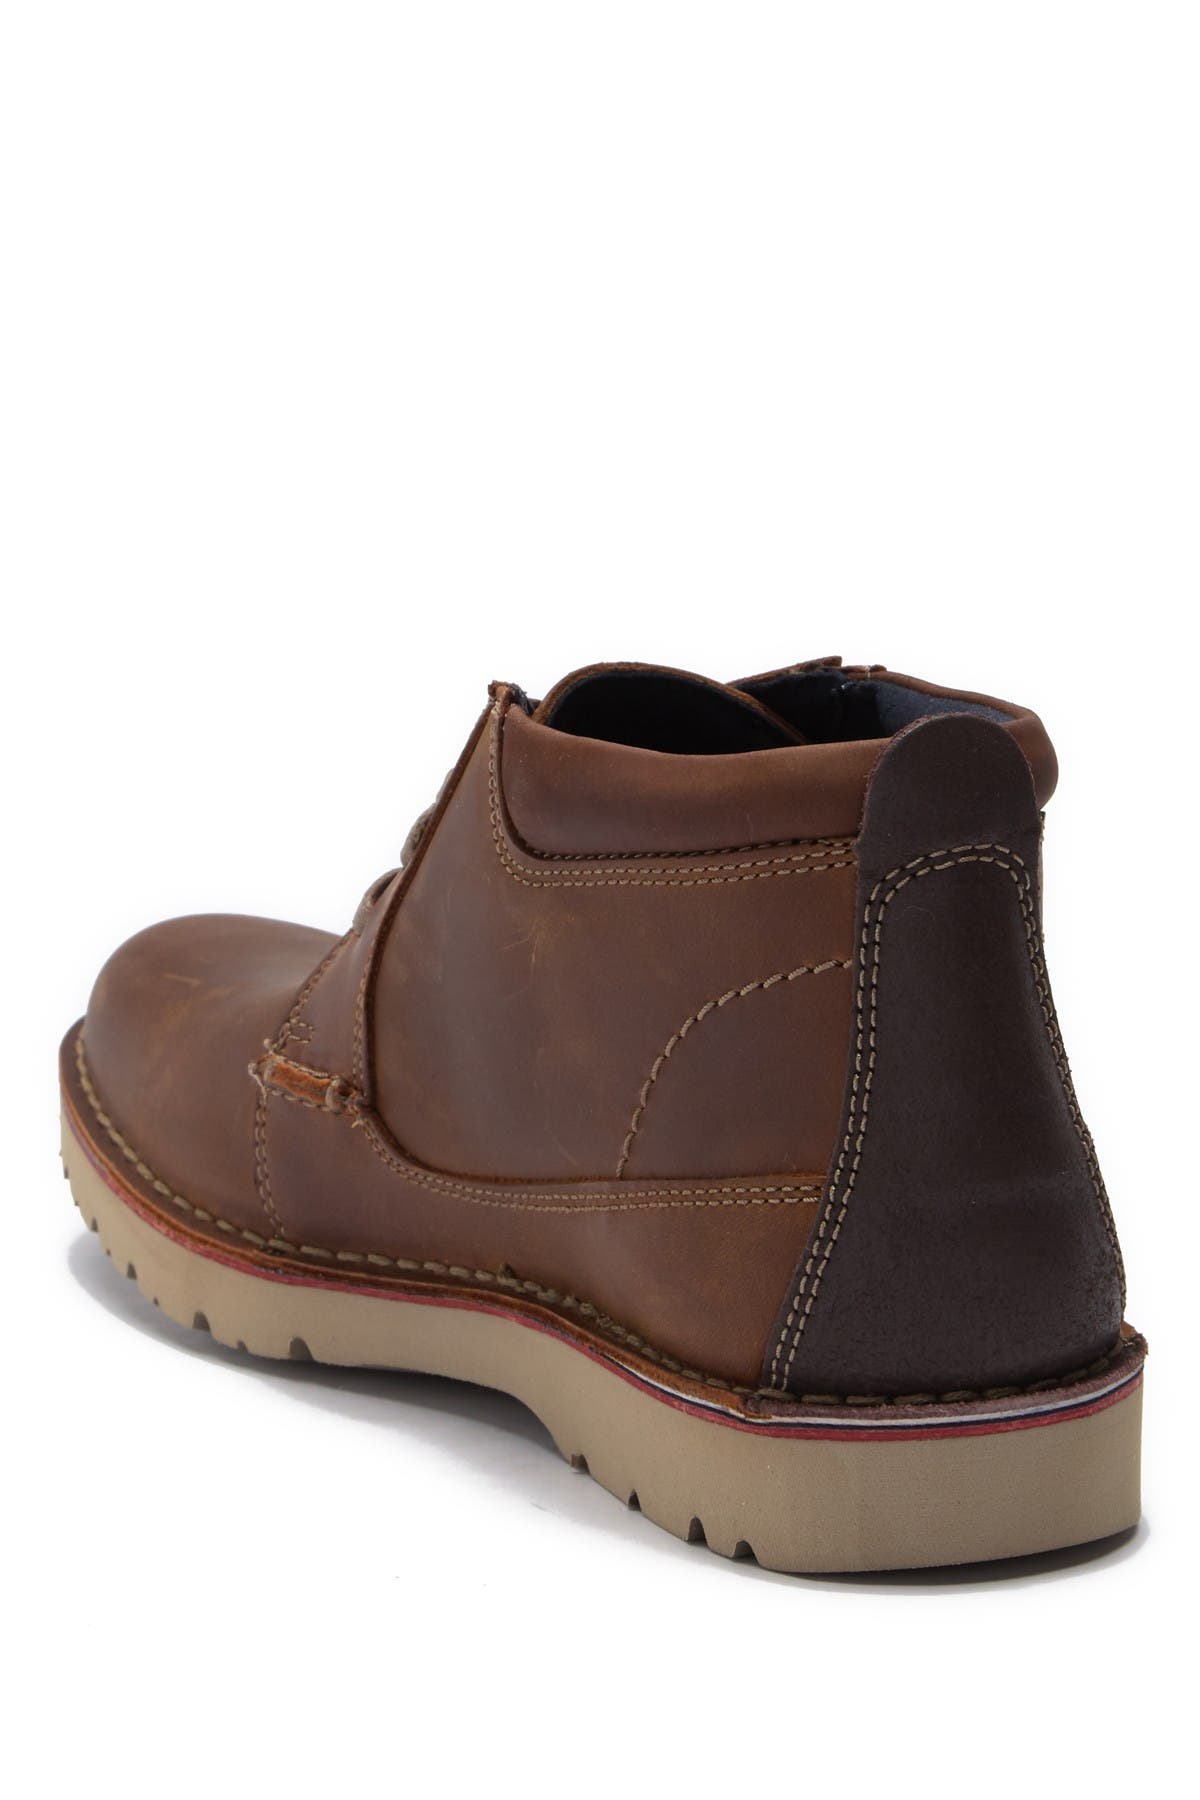 clarks vargo leather chukka boots